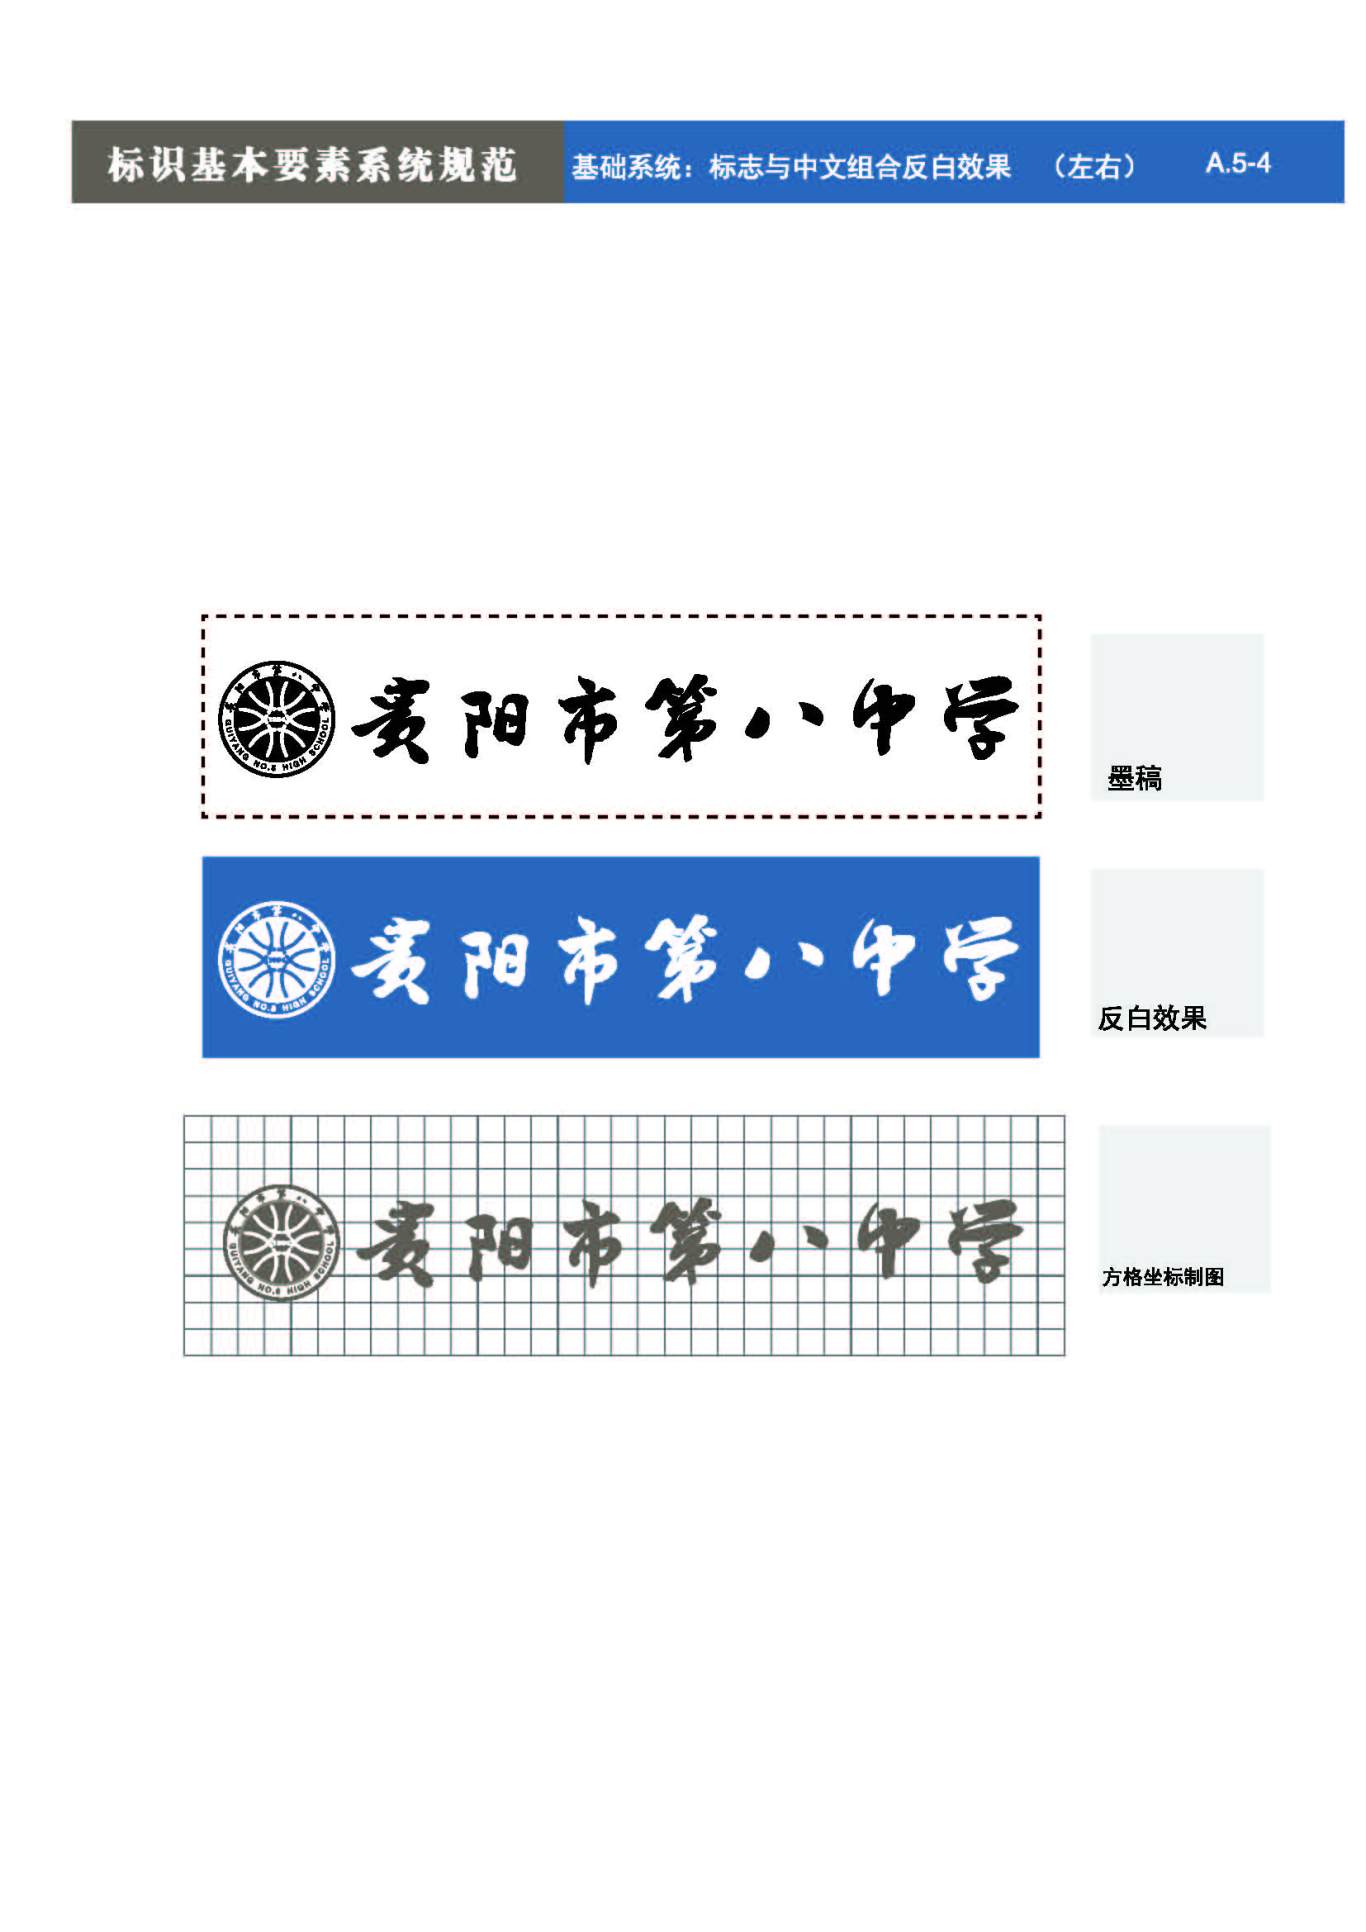 貴陽第八中學Logo、VIS設計圖15